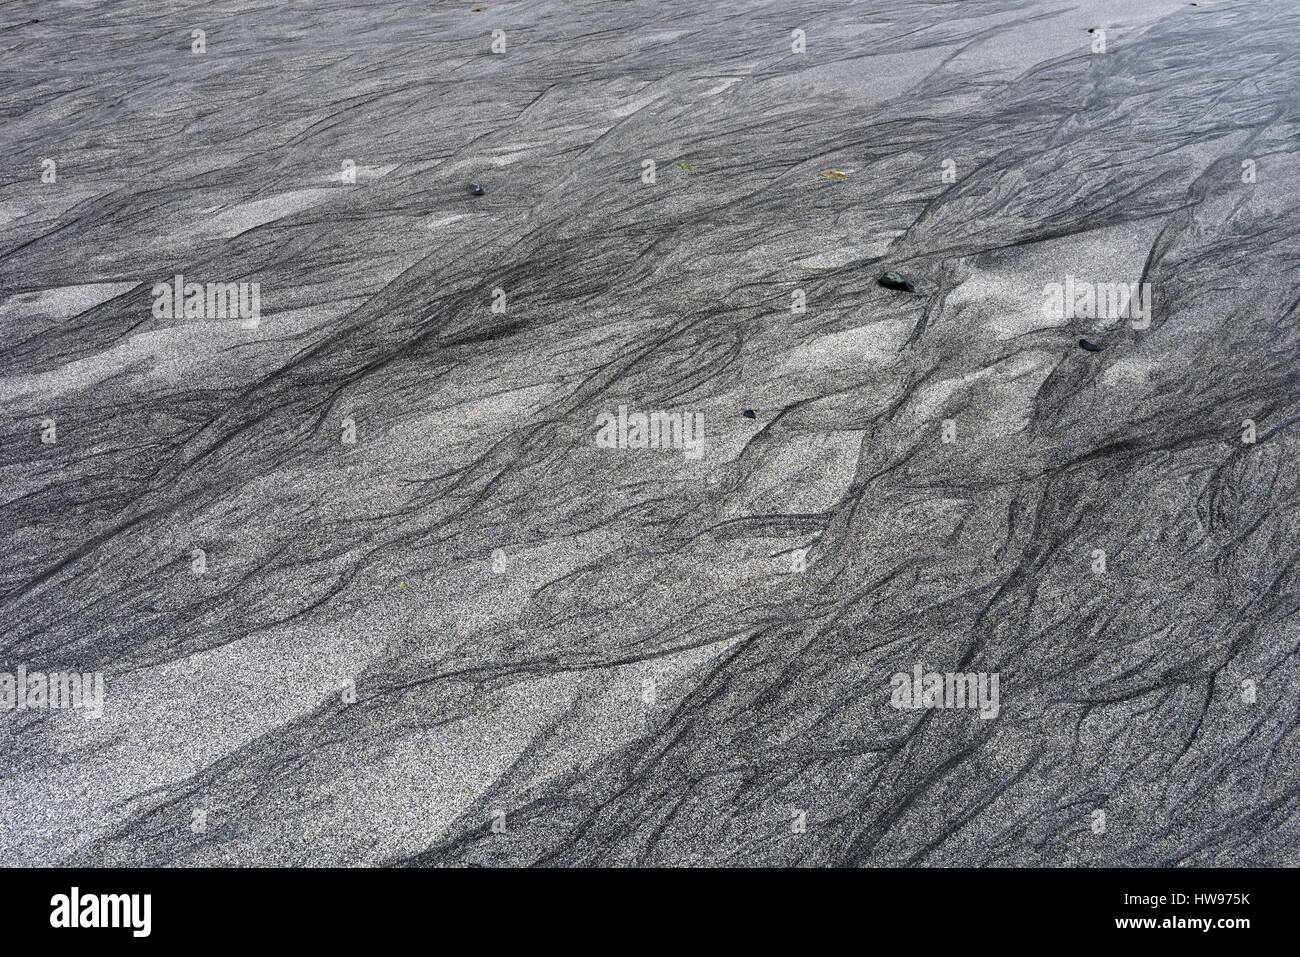 Sable blanc et noir, de l'eau fonctionnant à marée basse, des structures dans le sable, Talisker Bay, île de Skye, Ecosse, Royaume-Uni Banque D'Images